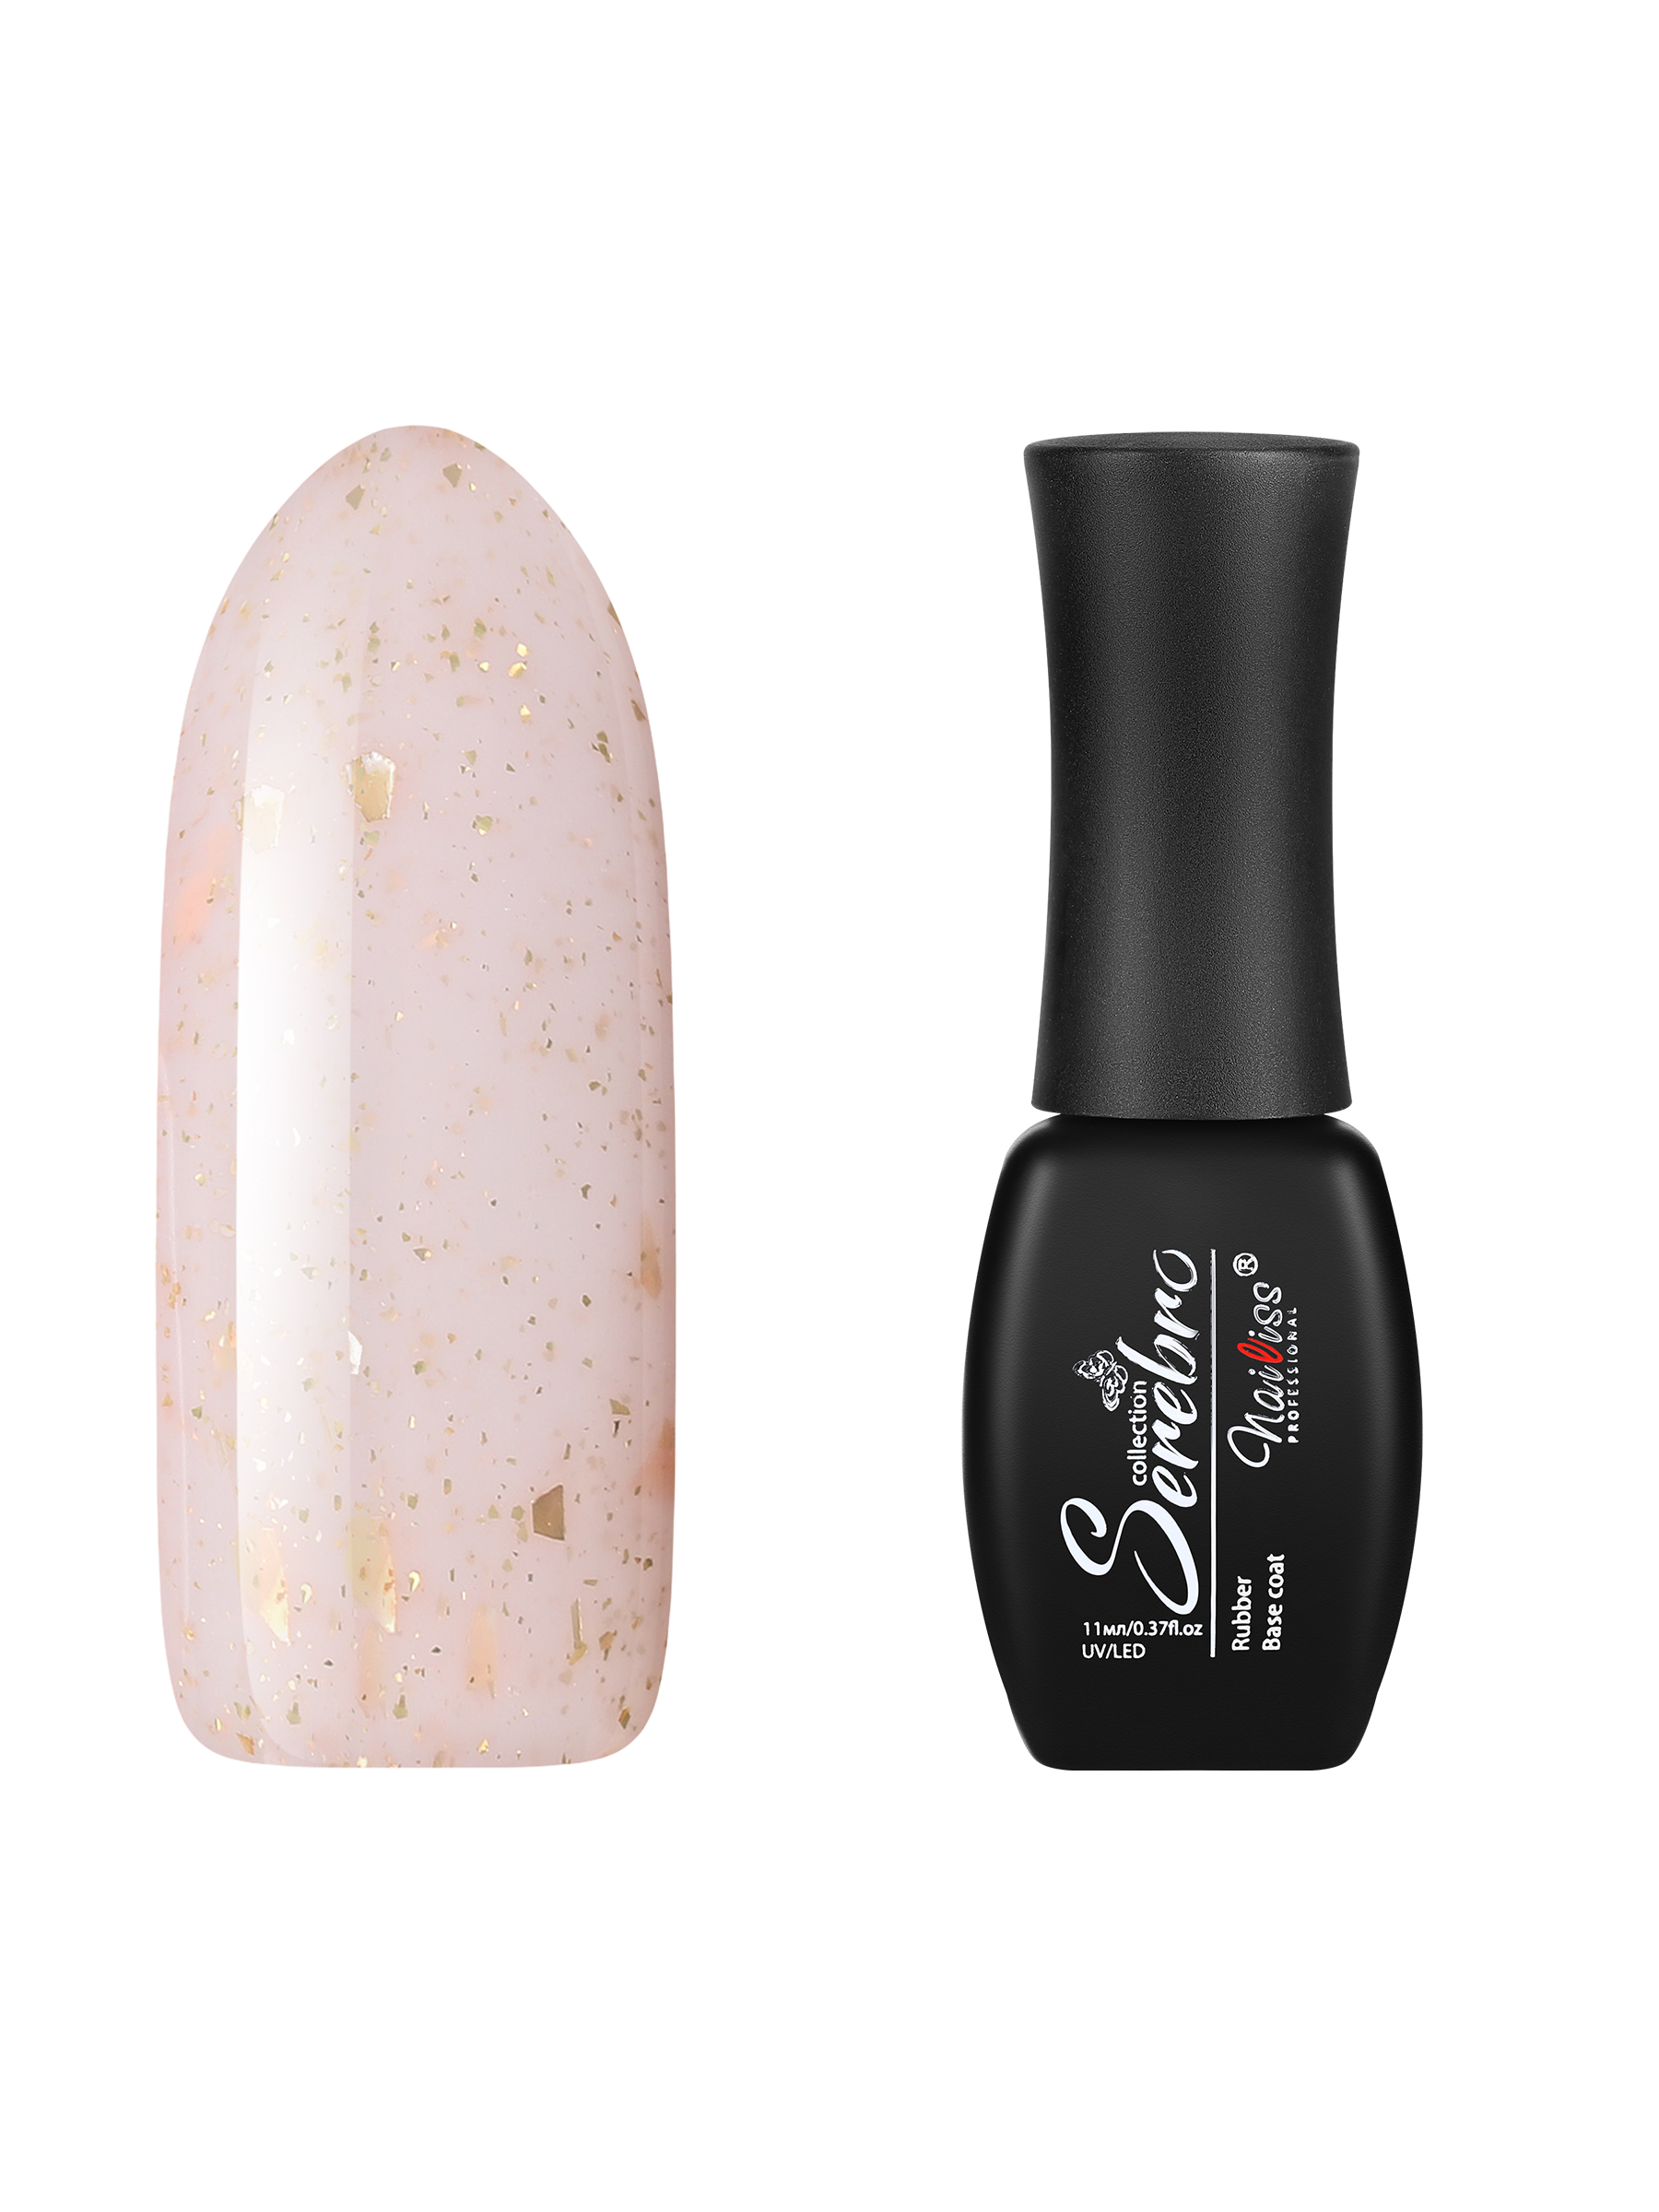 База для гель-лака Serebro камуфлирующая rubber основа для ногтей с поталью розовая, 11 мл shiseido выравнивающая основа под макияж refining makeup primer